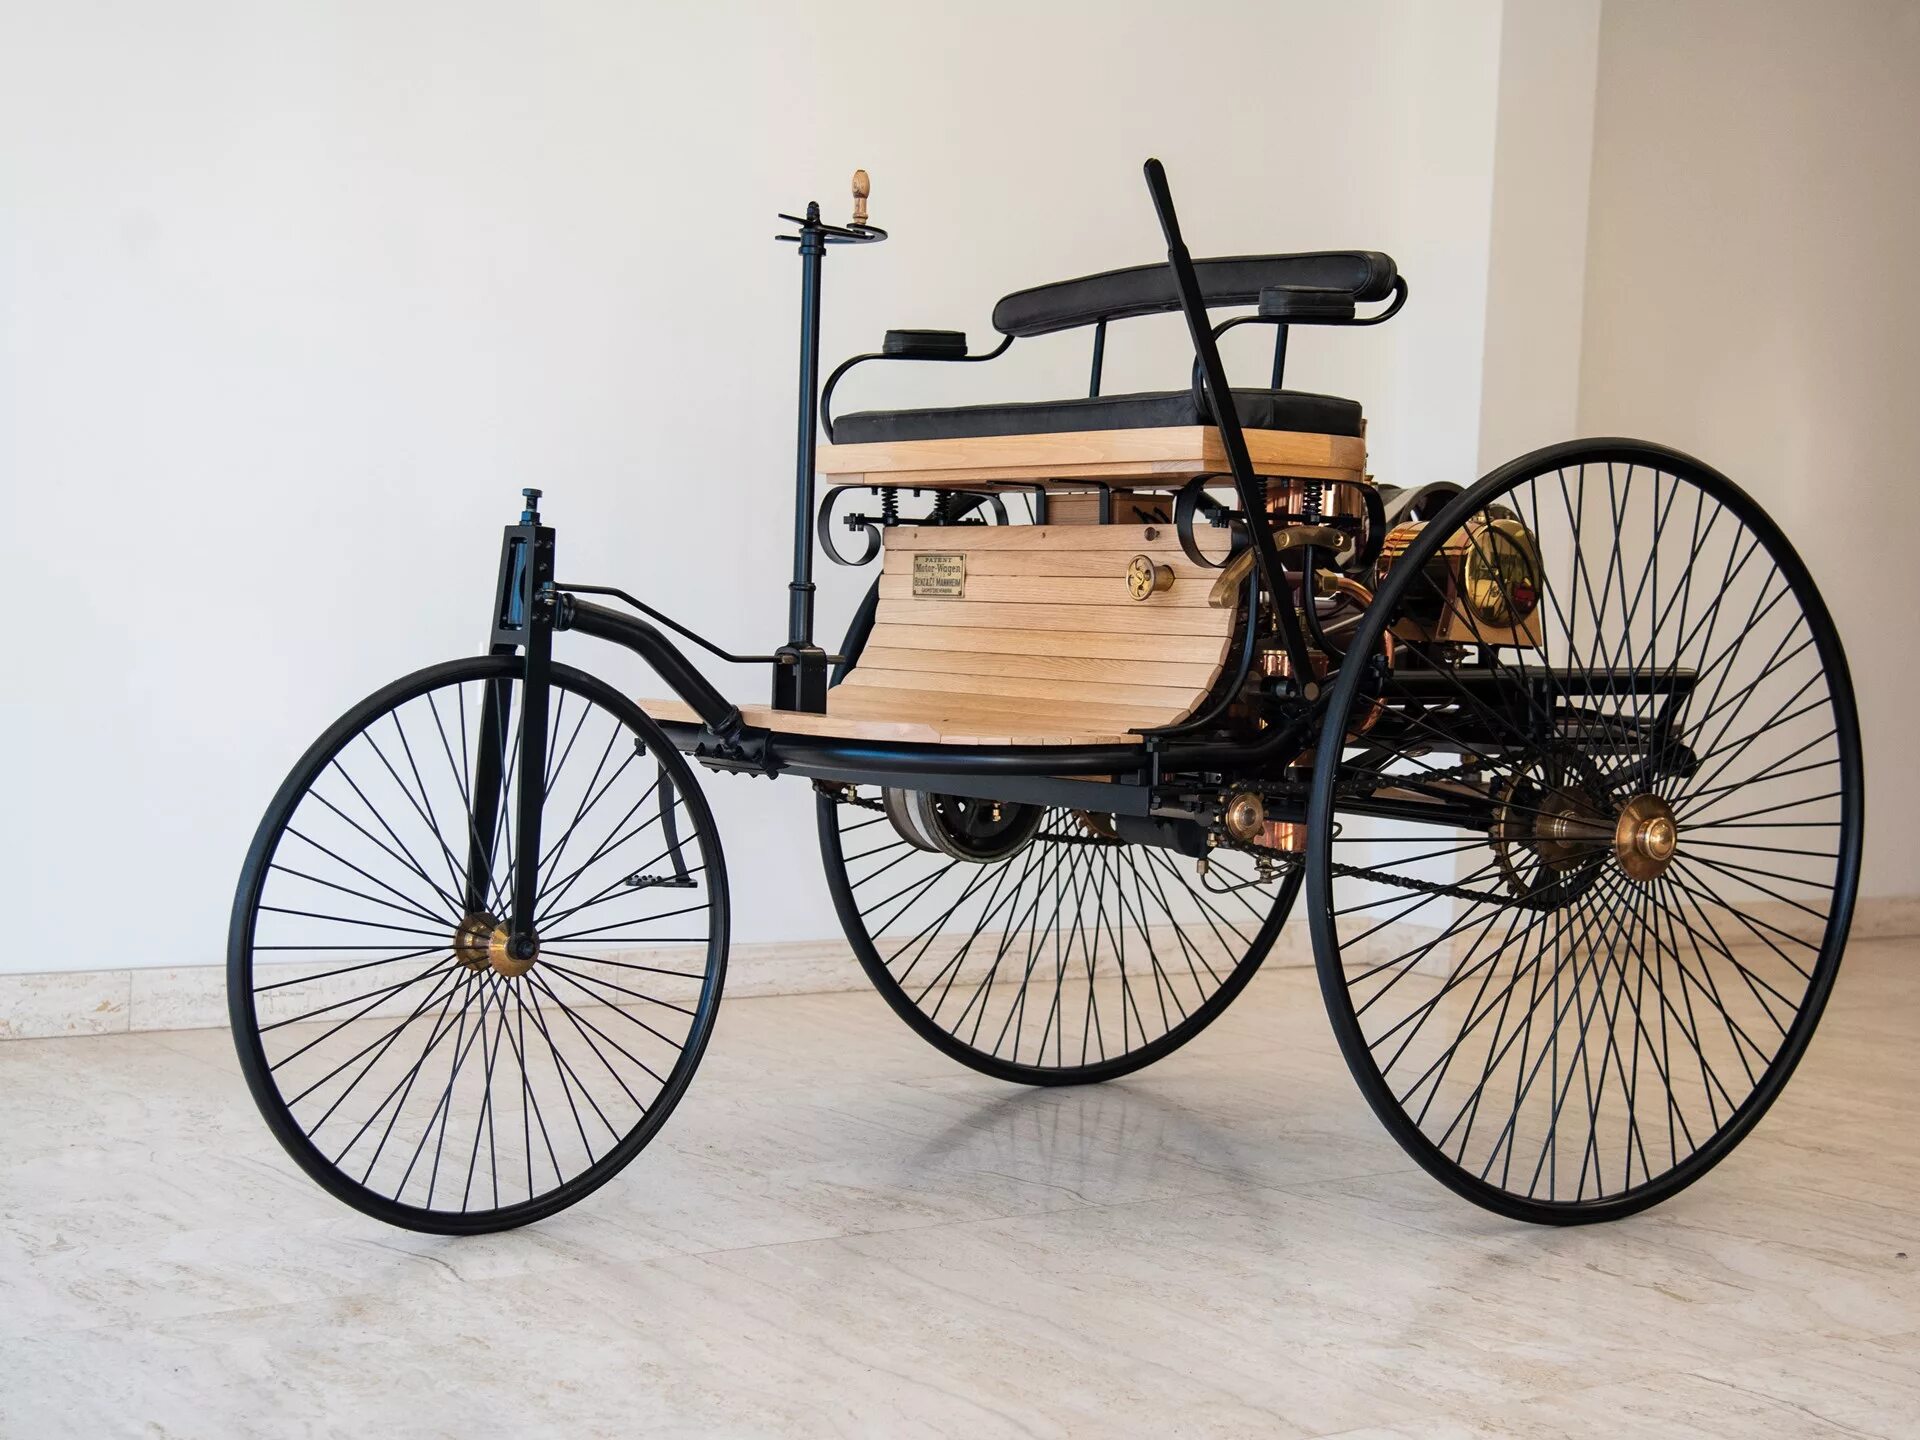 Benz Patent-Motorwagen 1886. Benz Motorwagen 1886 двигатель. Первые автомобили называли